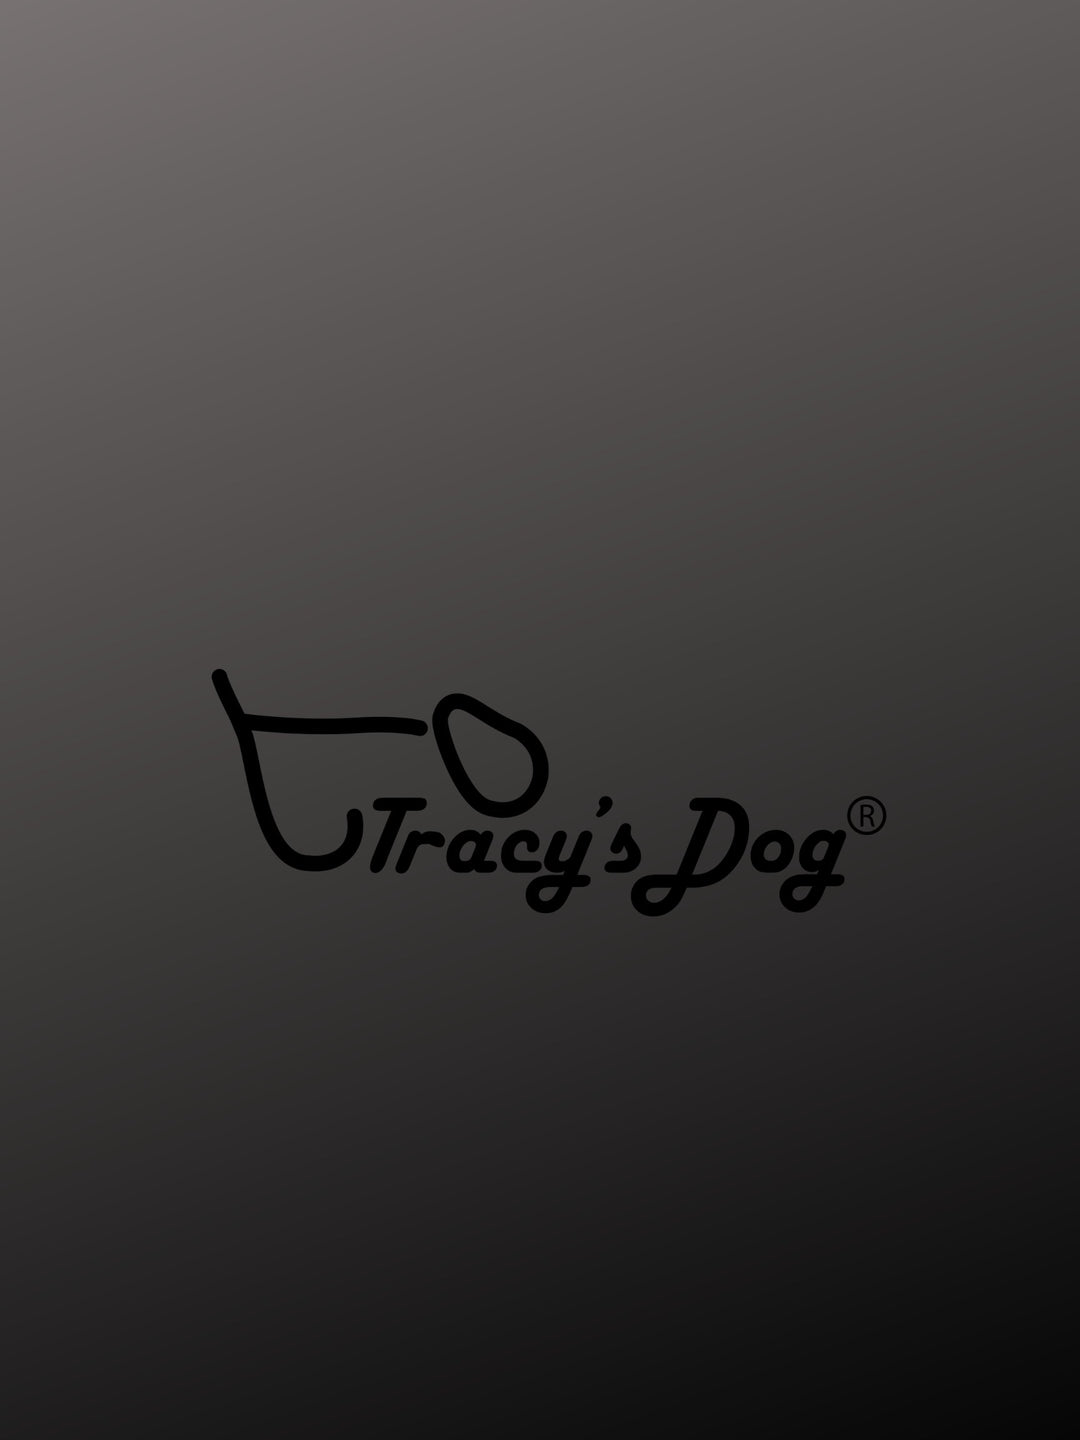 Tracy’s dog